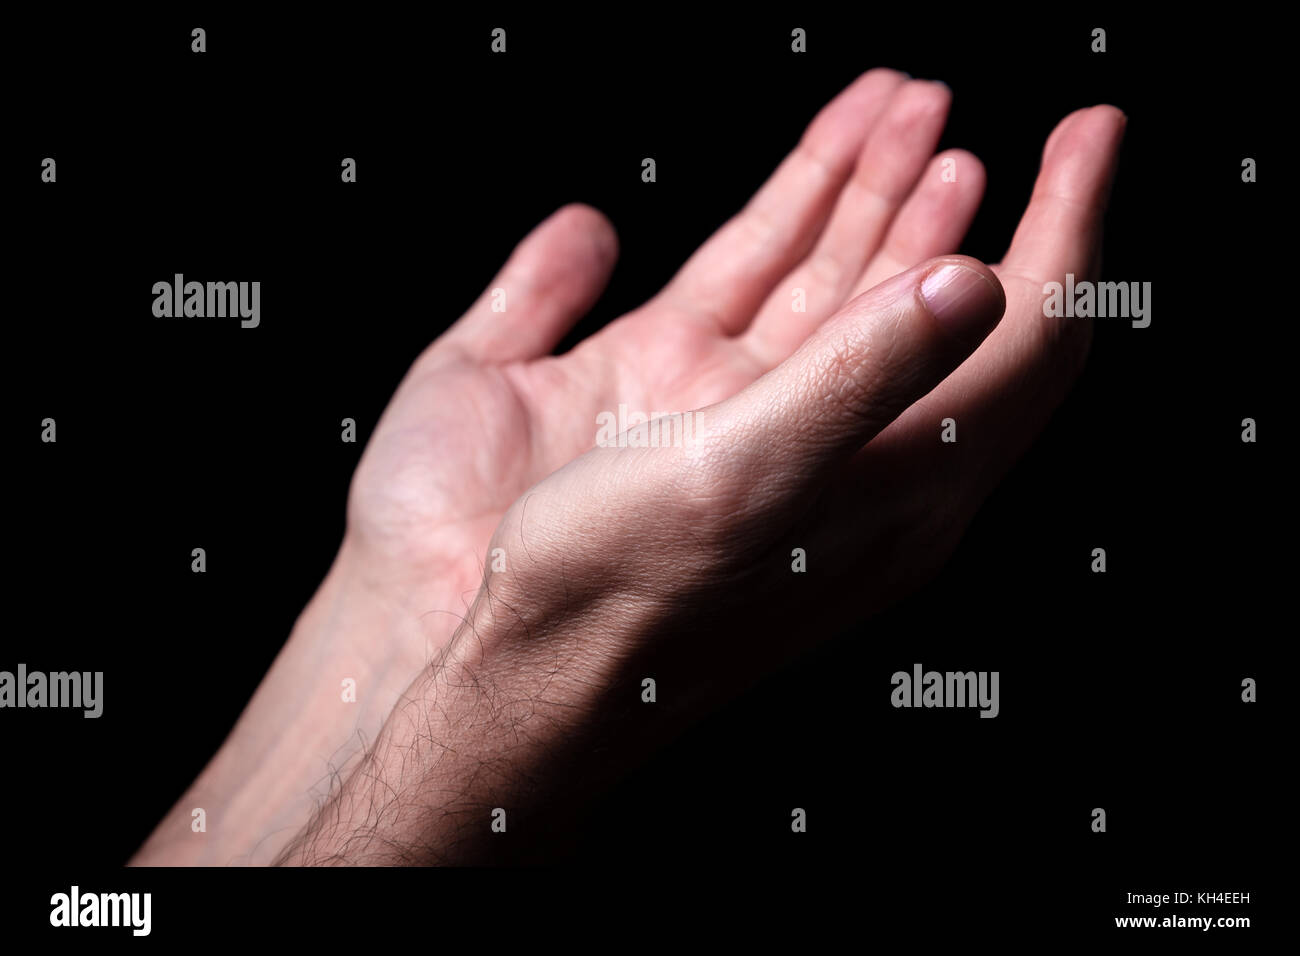 Maschio pregando le mani con i palmi rivolti verso l'alto braccia tese. sfondo nero. close up man mano. concetto per la preghiera, la fede, la religione, religiosi, di culto Foto Stock